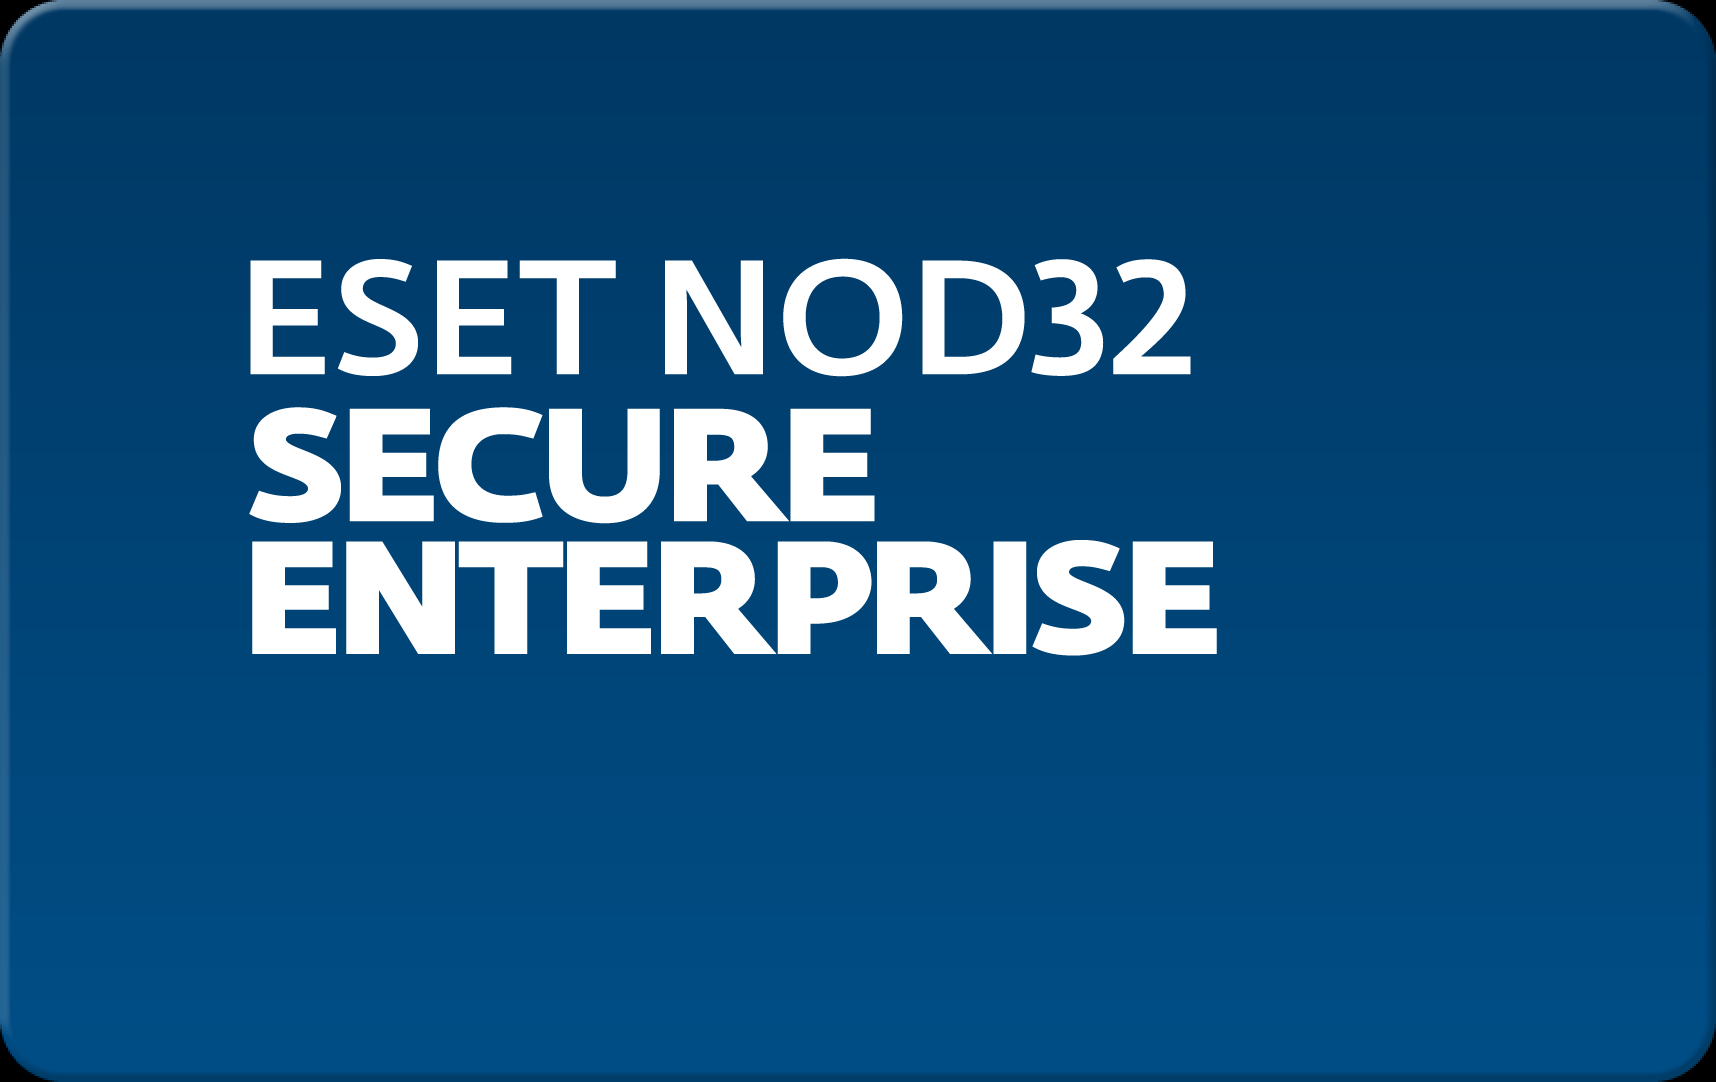        Eset NOD32 Secure Enterprise  142 